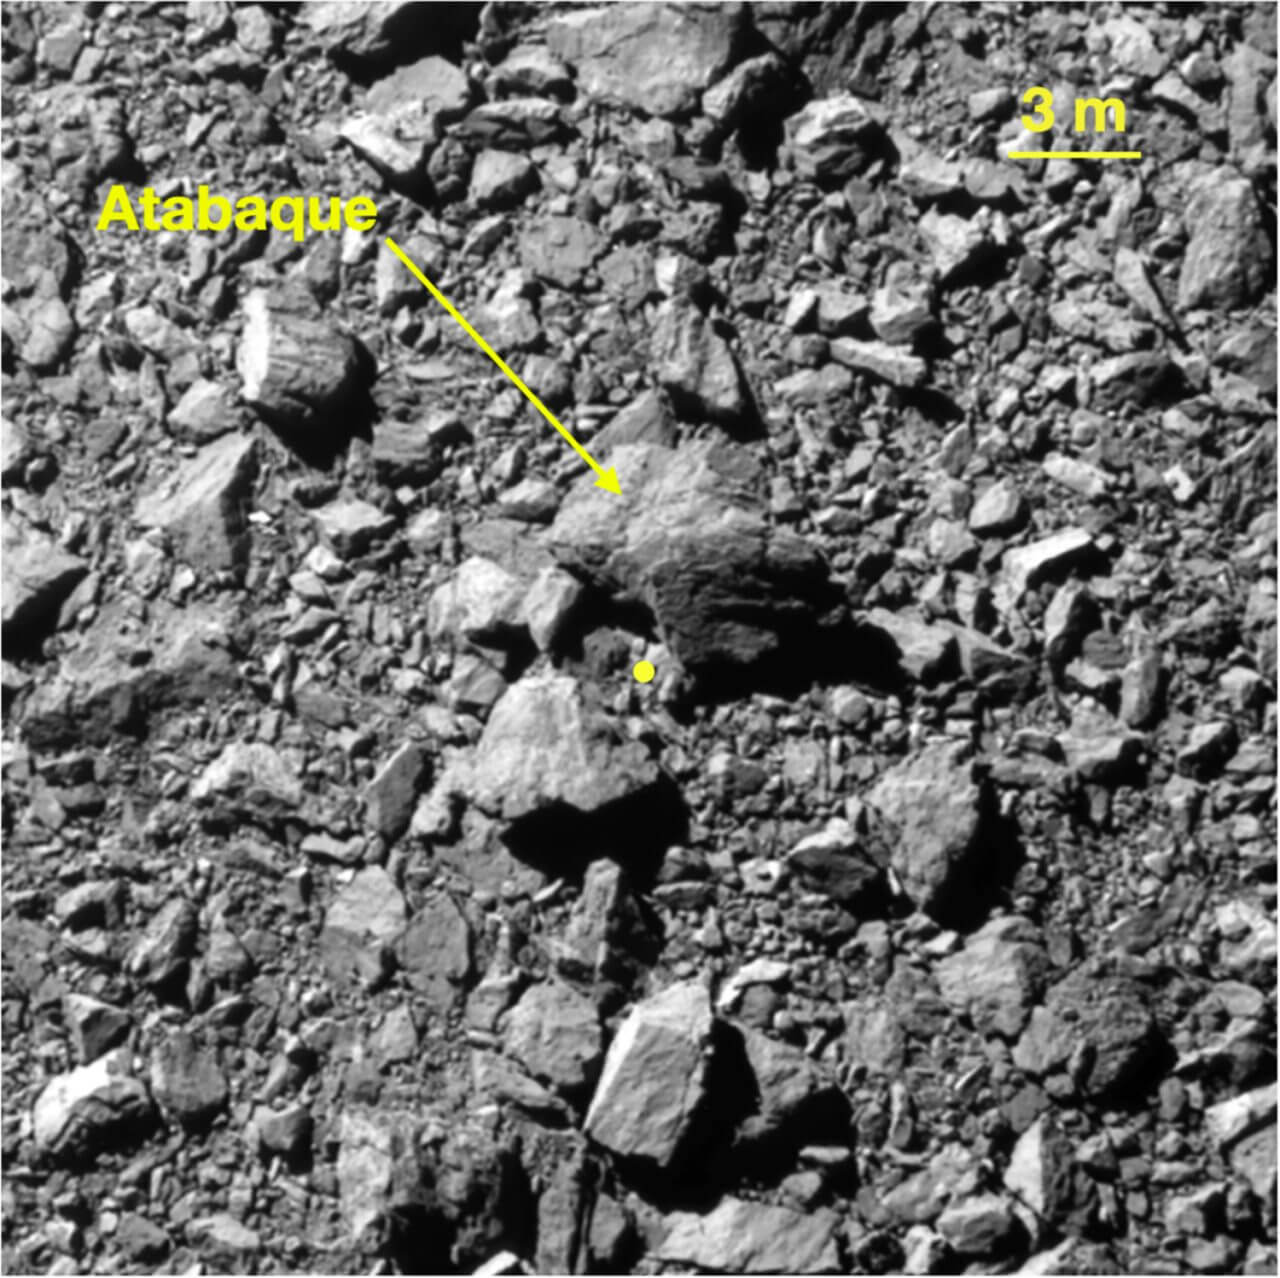 【▲ 図3: DARTが衝突2秒前に撮影したディモルフォスの表面の様子。大小さまざまな岩で覆われていることが分かる。中央の黄色い点が推定衝突場所。矢印で示された岩は、衝突までの目印に利用されたアタバキ岩塊 (Atabaque Saxum) 。 (Image Credit: NASA, Johns Hopkins APL) 】